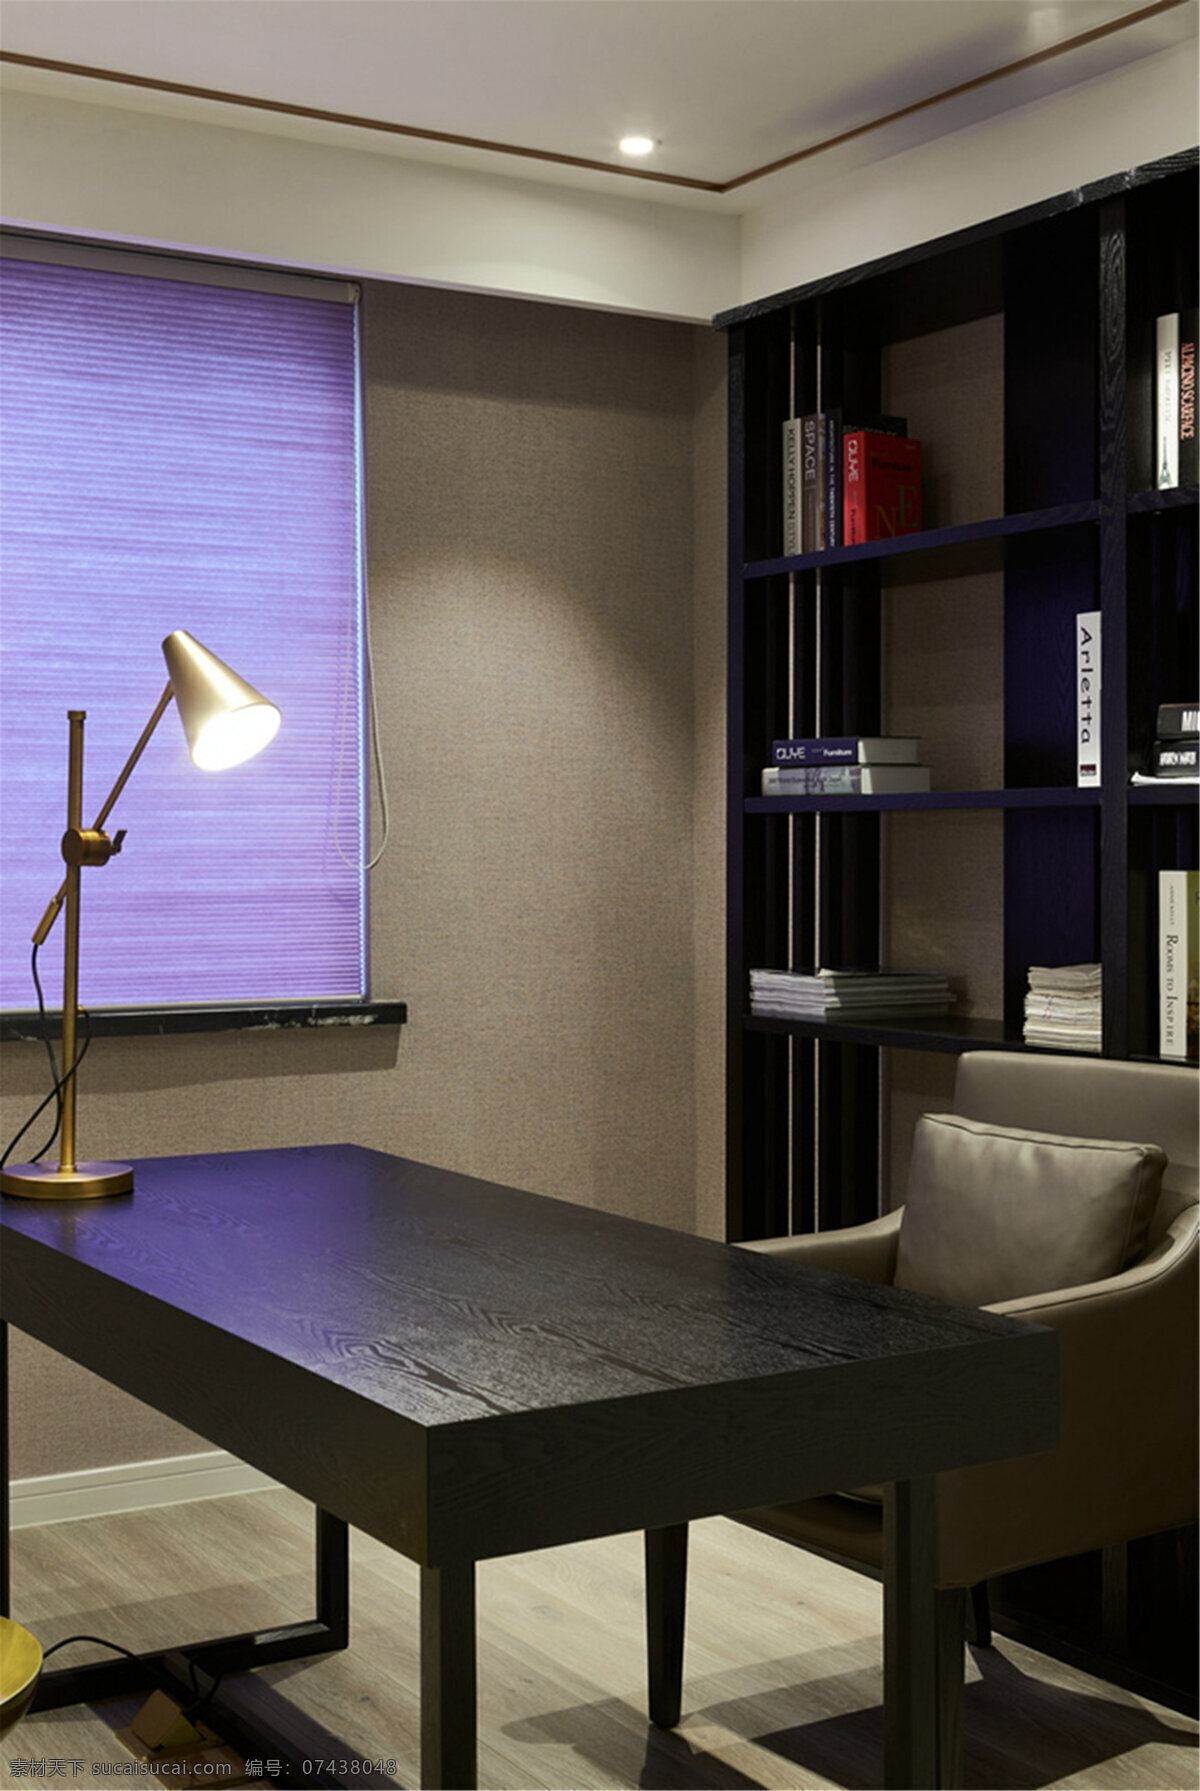 紫色 窗帘 书房 装修 效果图 家具 装修设计 空间设计 设计风格 家居 家具设计 室内装修 室内设计 书桌 书架